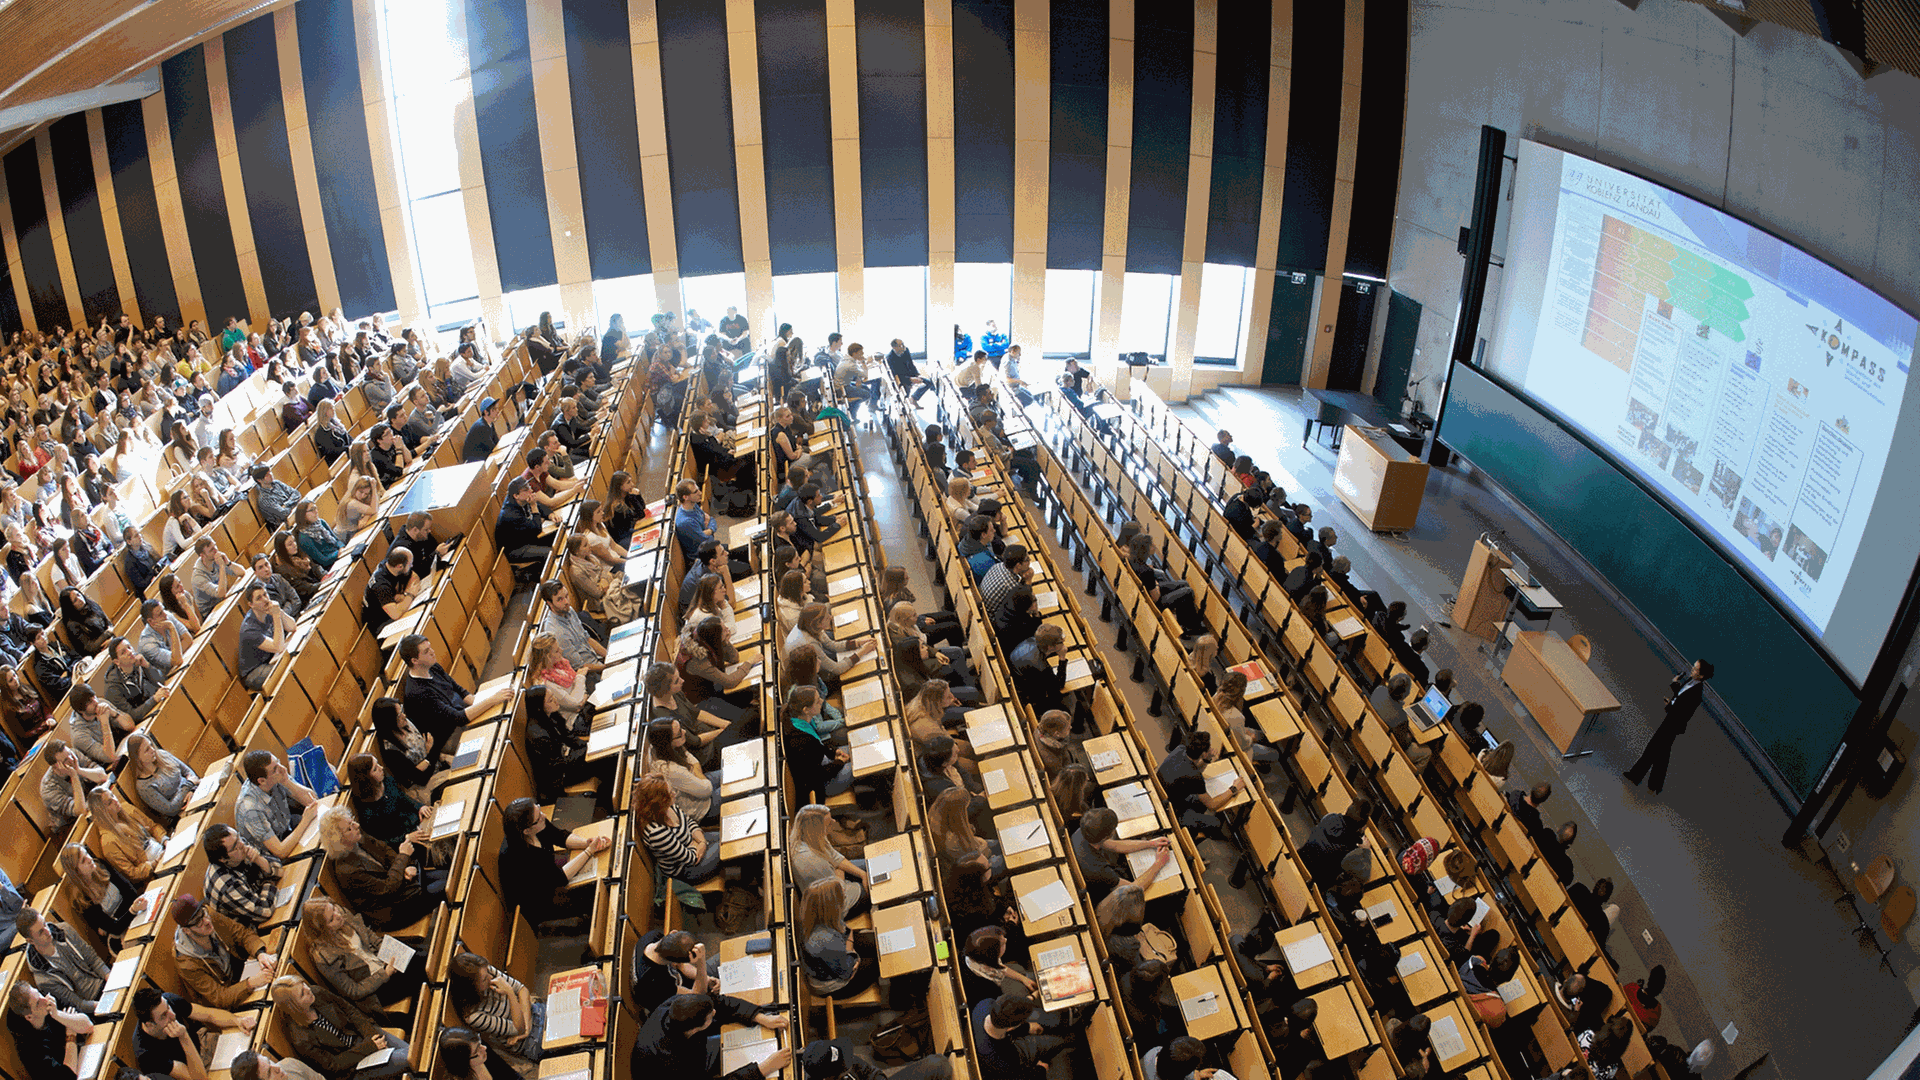 793 Studenten sitzen am 10.04.2014 bei der Erstsemesterbegrüßung am Campus Koblenz der Universität Koblenz-Landau in Koblenz-Rheinland-Pfalz im großen Hörsaal. 